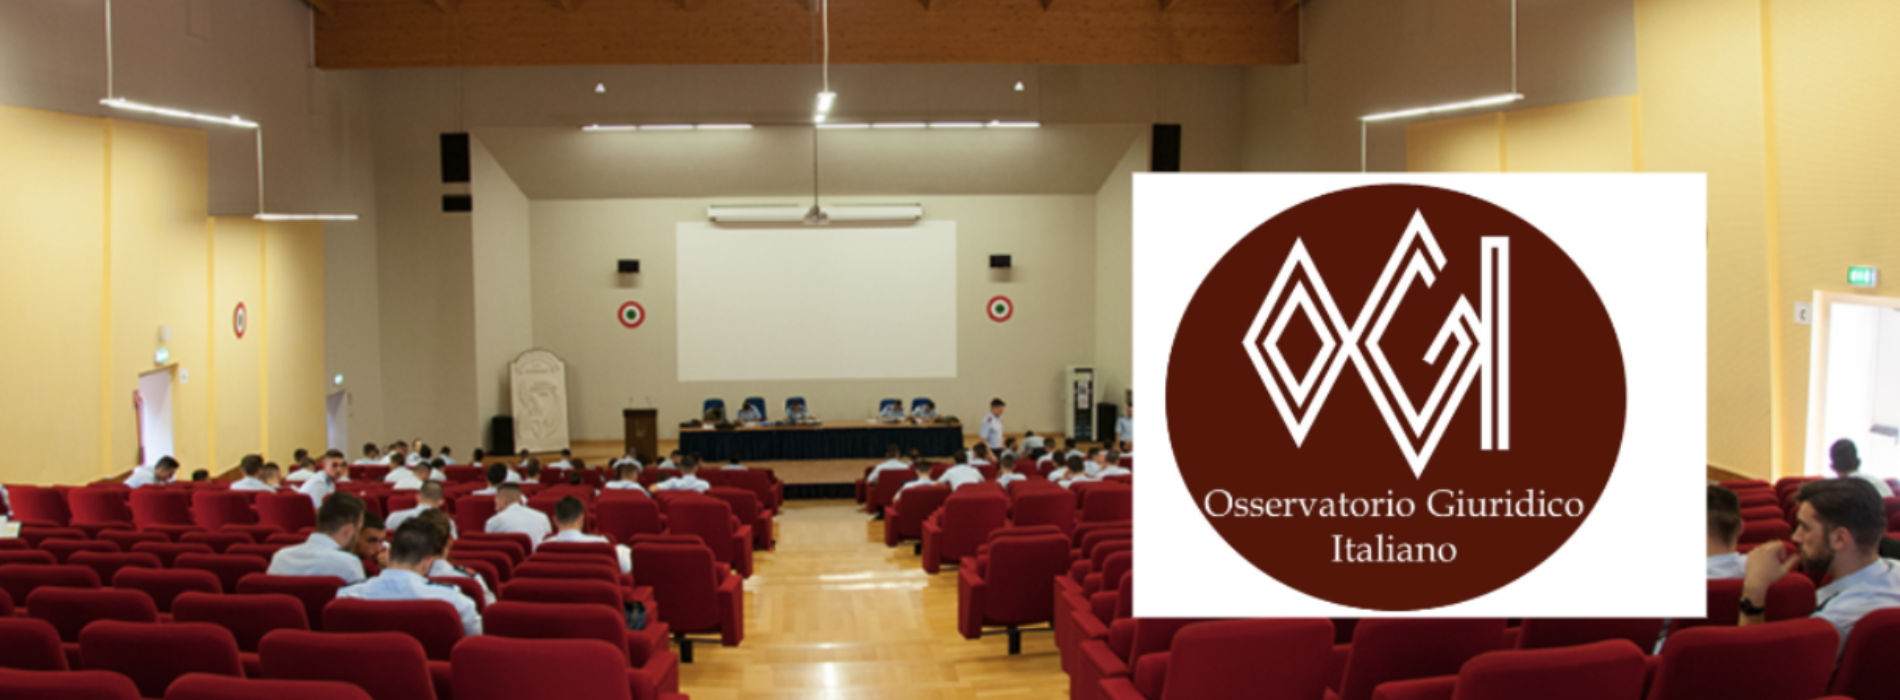 L’Osservatorio Giuridico Italiano celebra quindici anni di attività